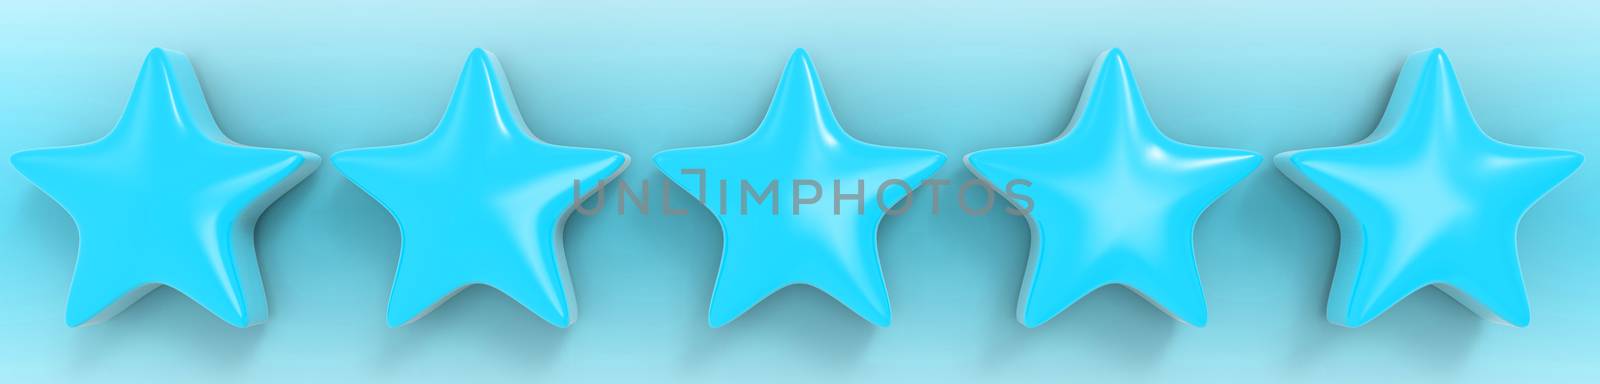 3d five azure star on color background. Render and illustration of golden star for premium